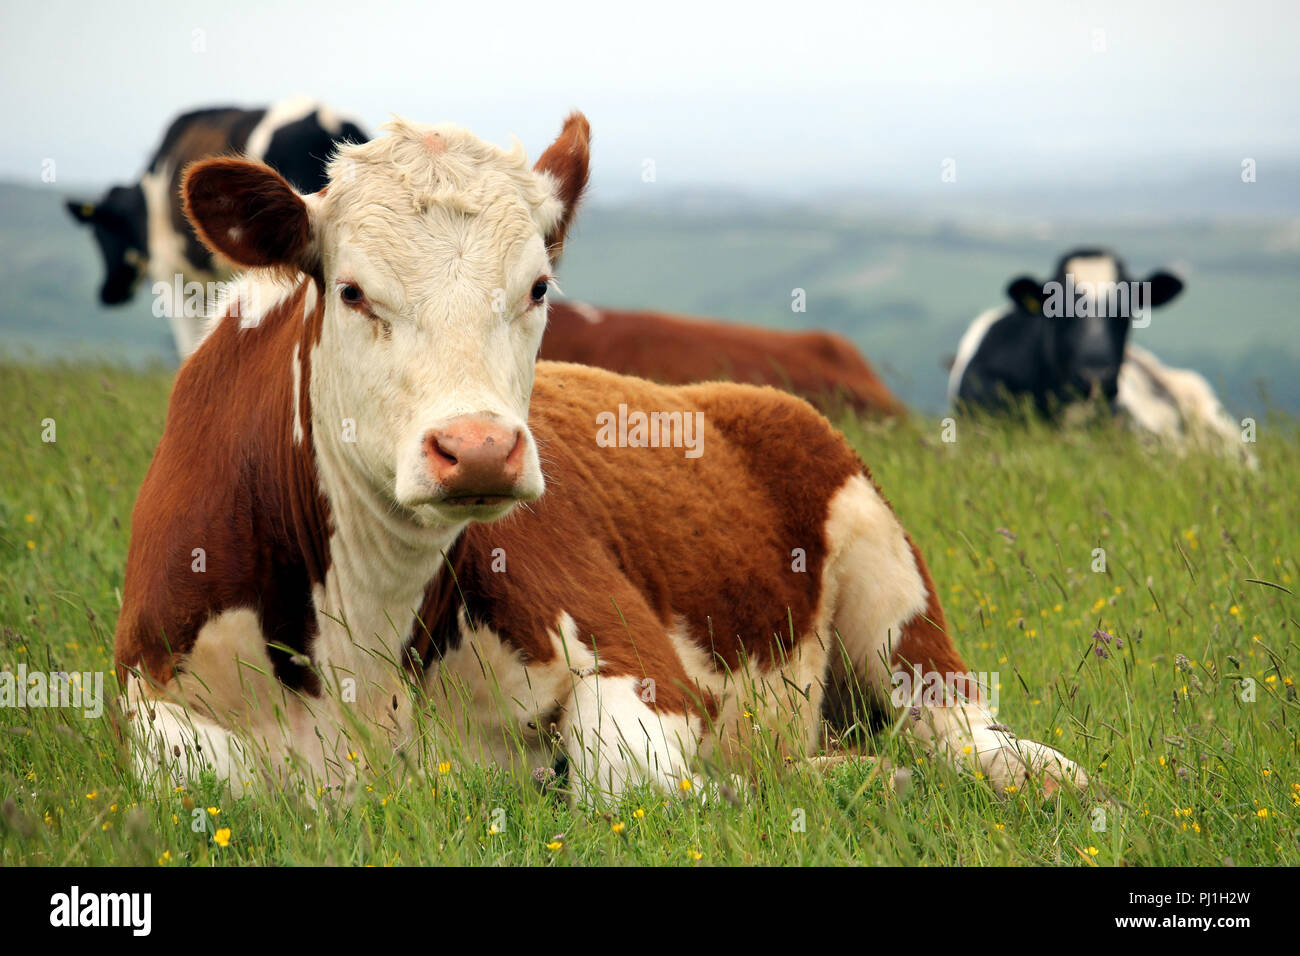 Vache Hereford couché avec d'autres bovins de race Frisonne sur une colline avec champ de pâturage fond brumeux Banque D'Images